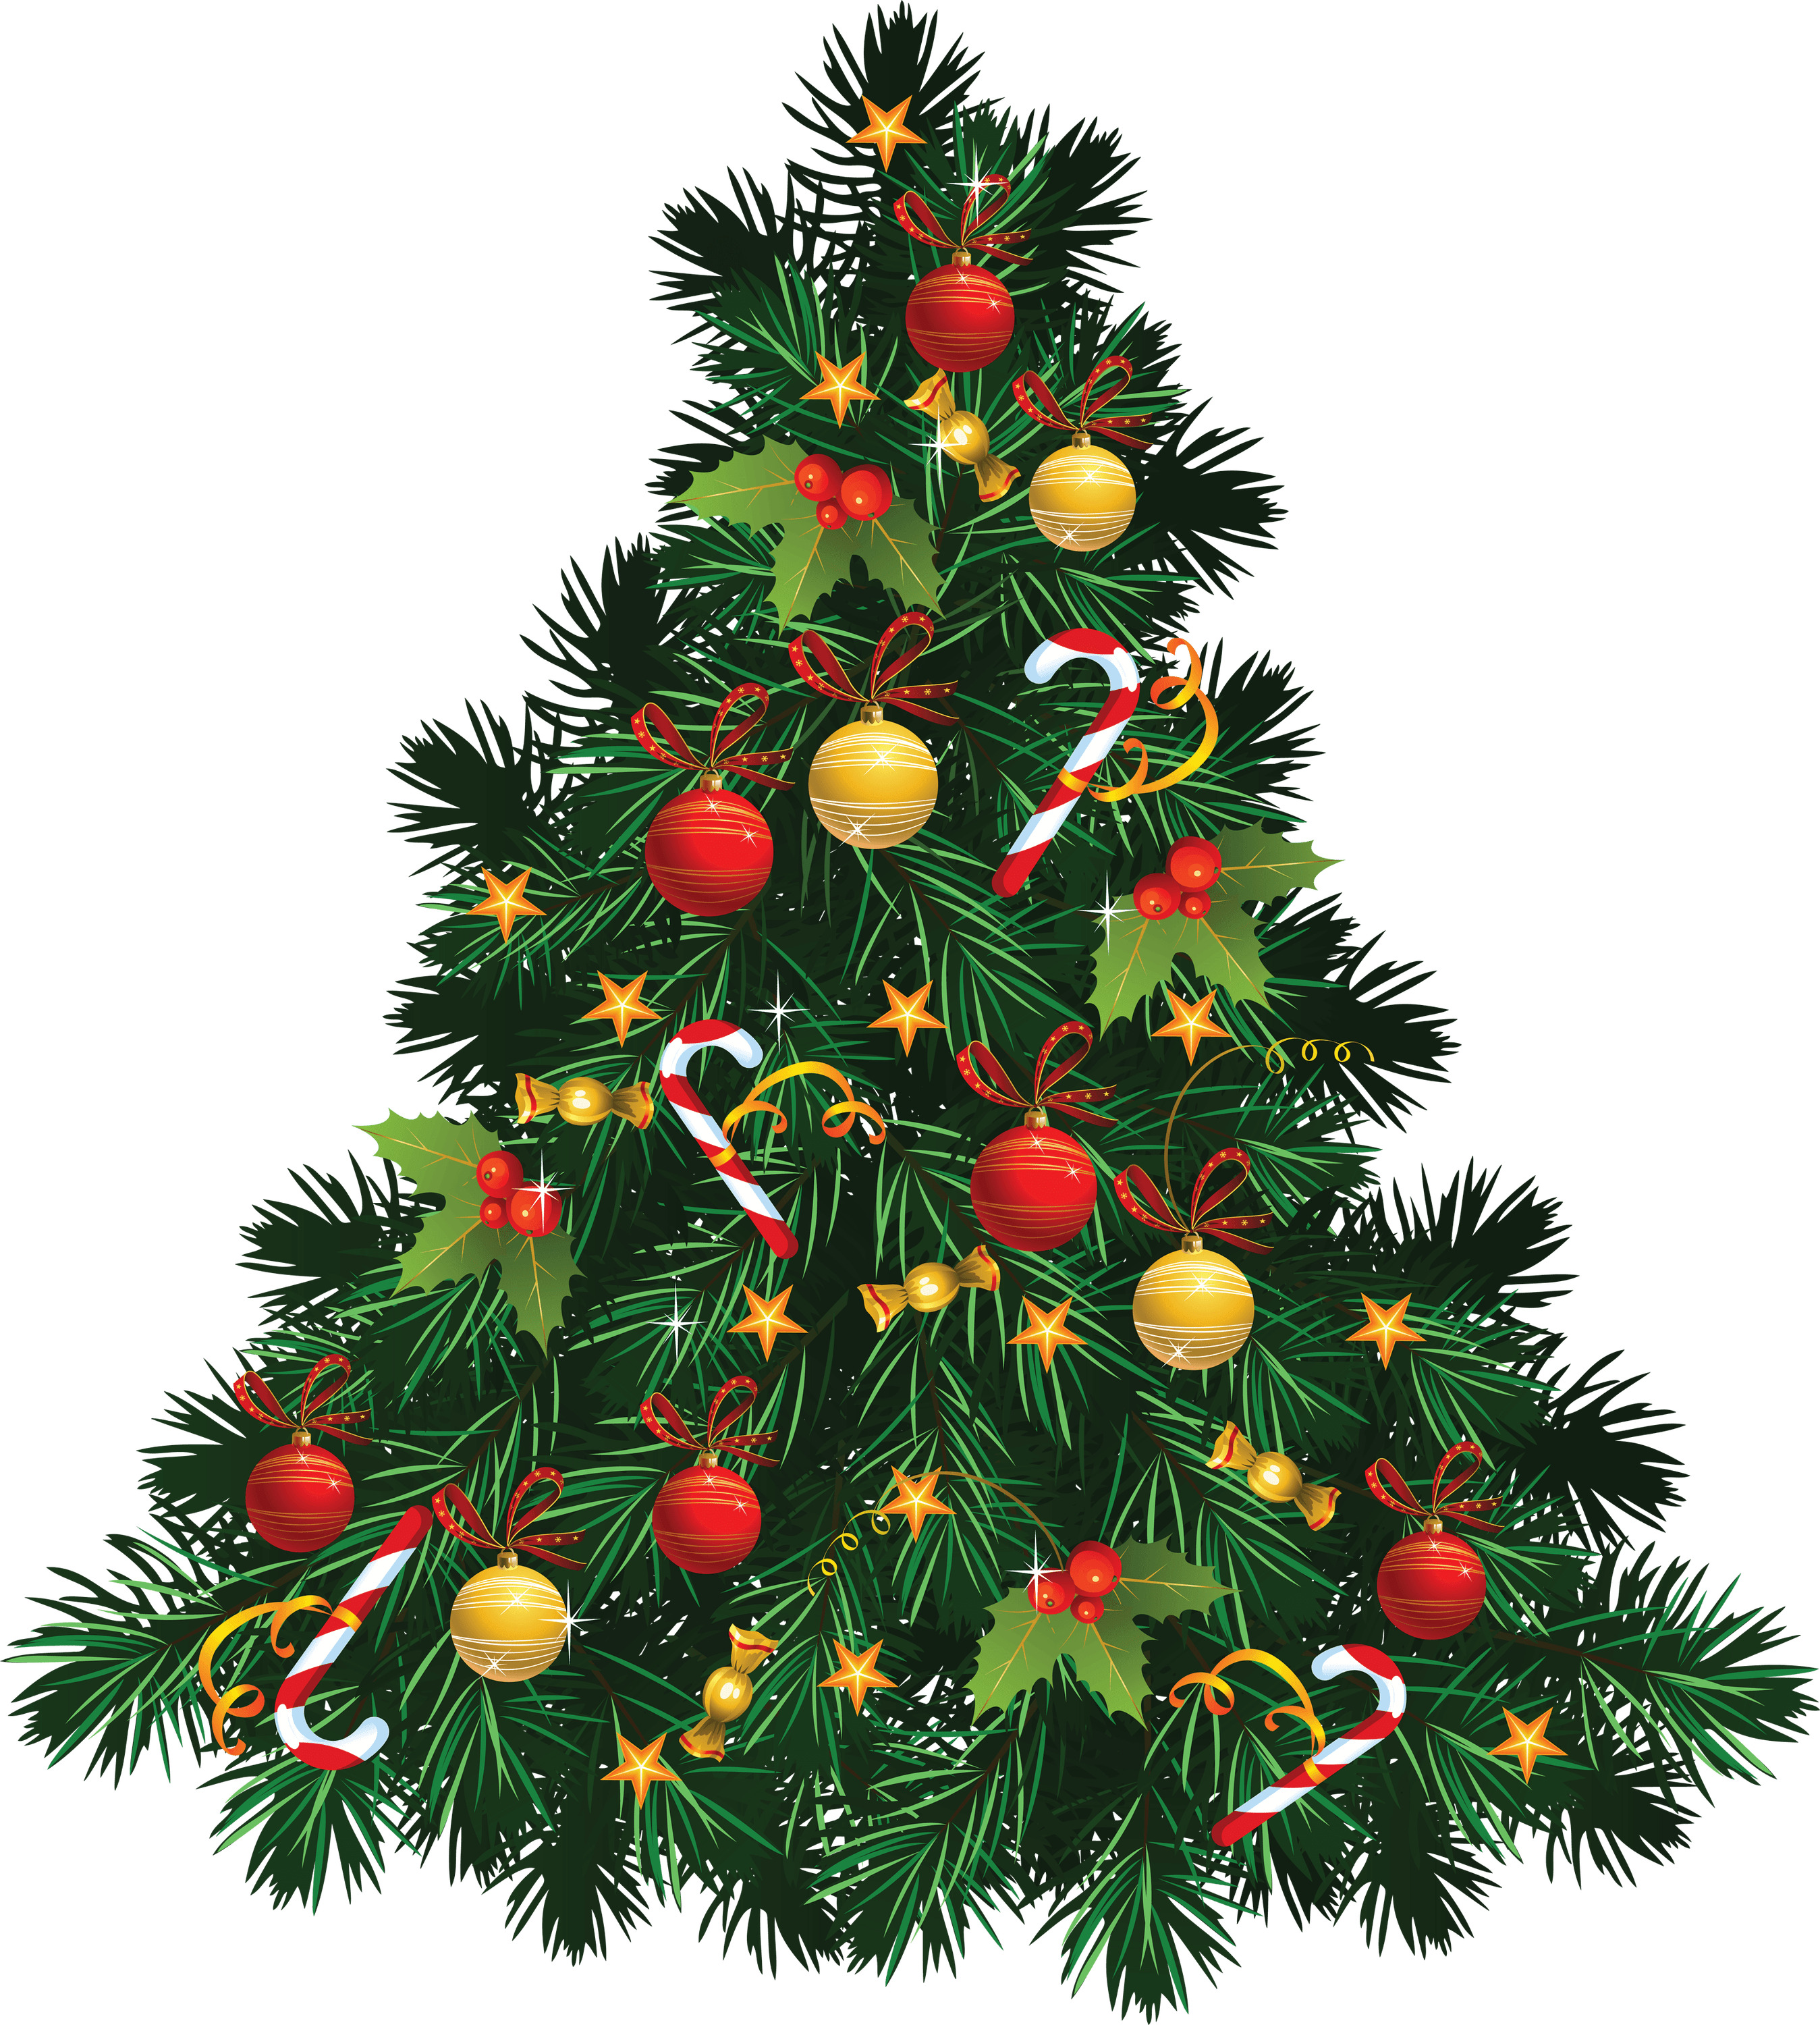 Fir Tree Christmas icons